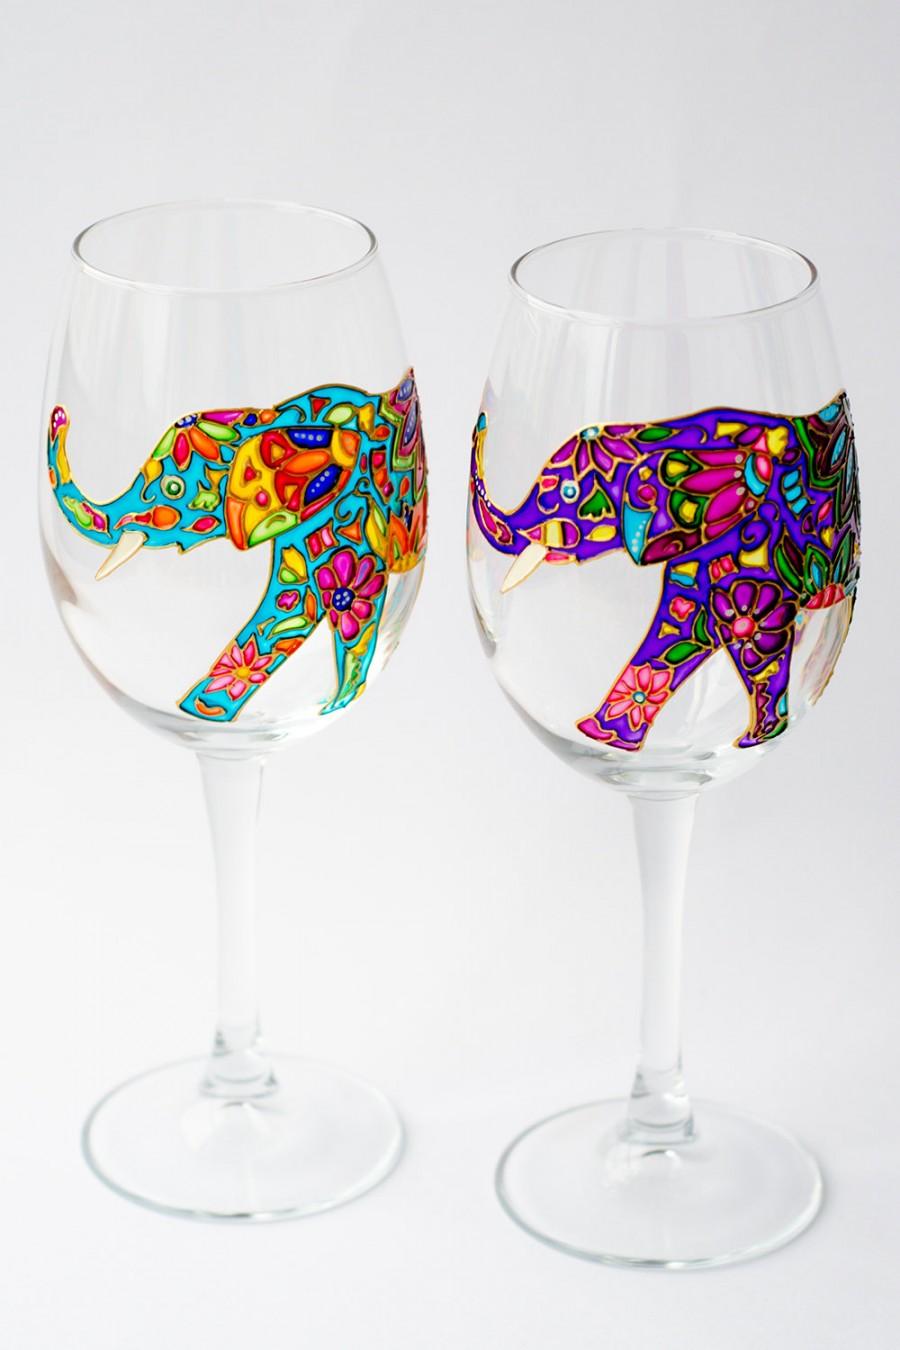 زفاف - Elephant Wine Glasses Hand Painted, Wine glass for Bridesmaid Wedding Glasses, Bohemian Elephant, Toasting glasses - $54.50 USD